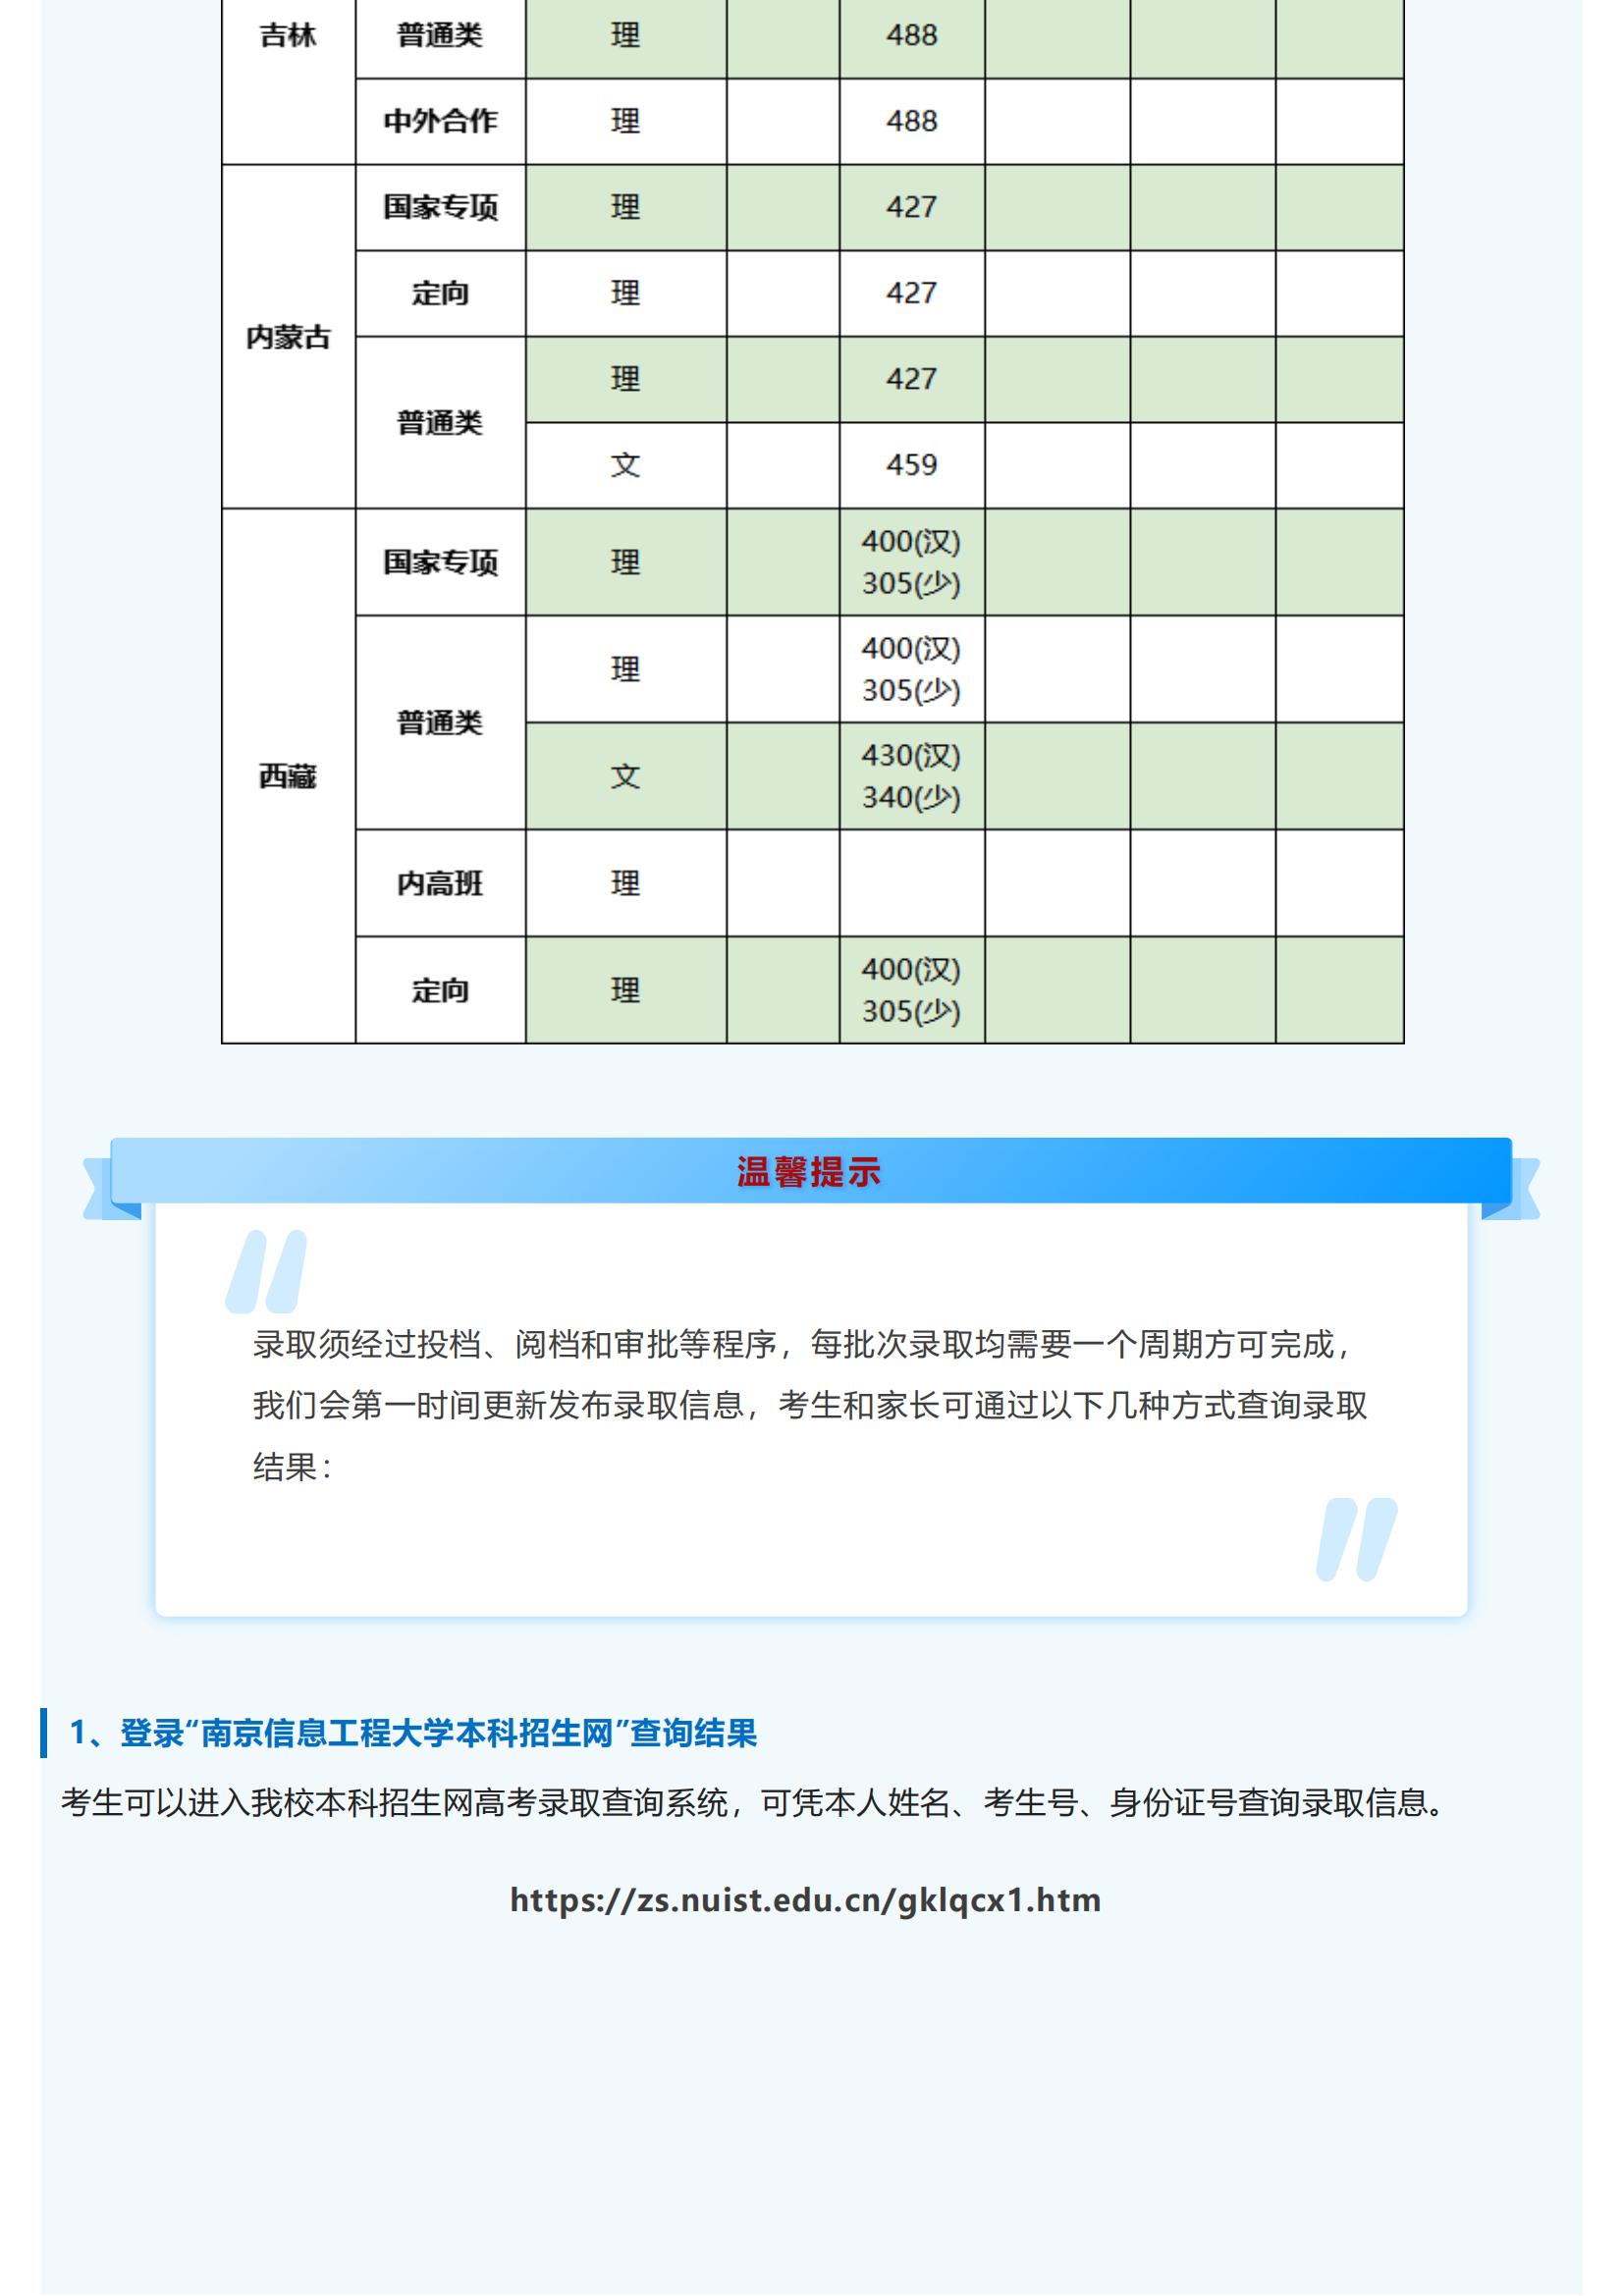 招生快讯 _ 南京信息工程大学2022年录取信息发布（7月10日更新）_08.jpg